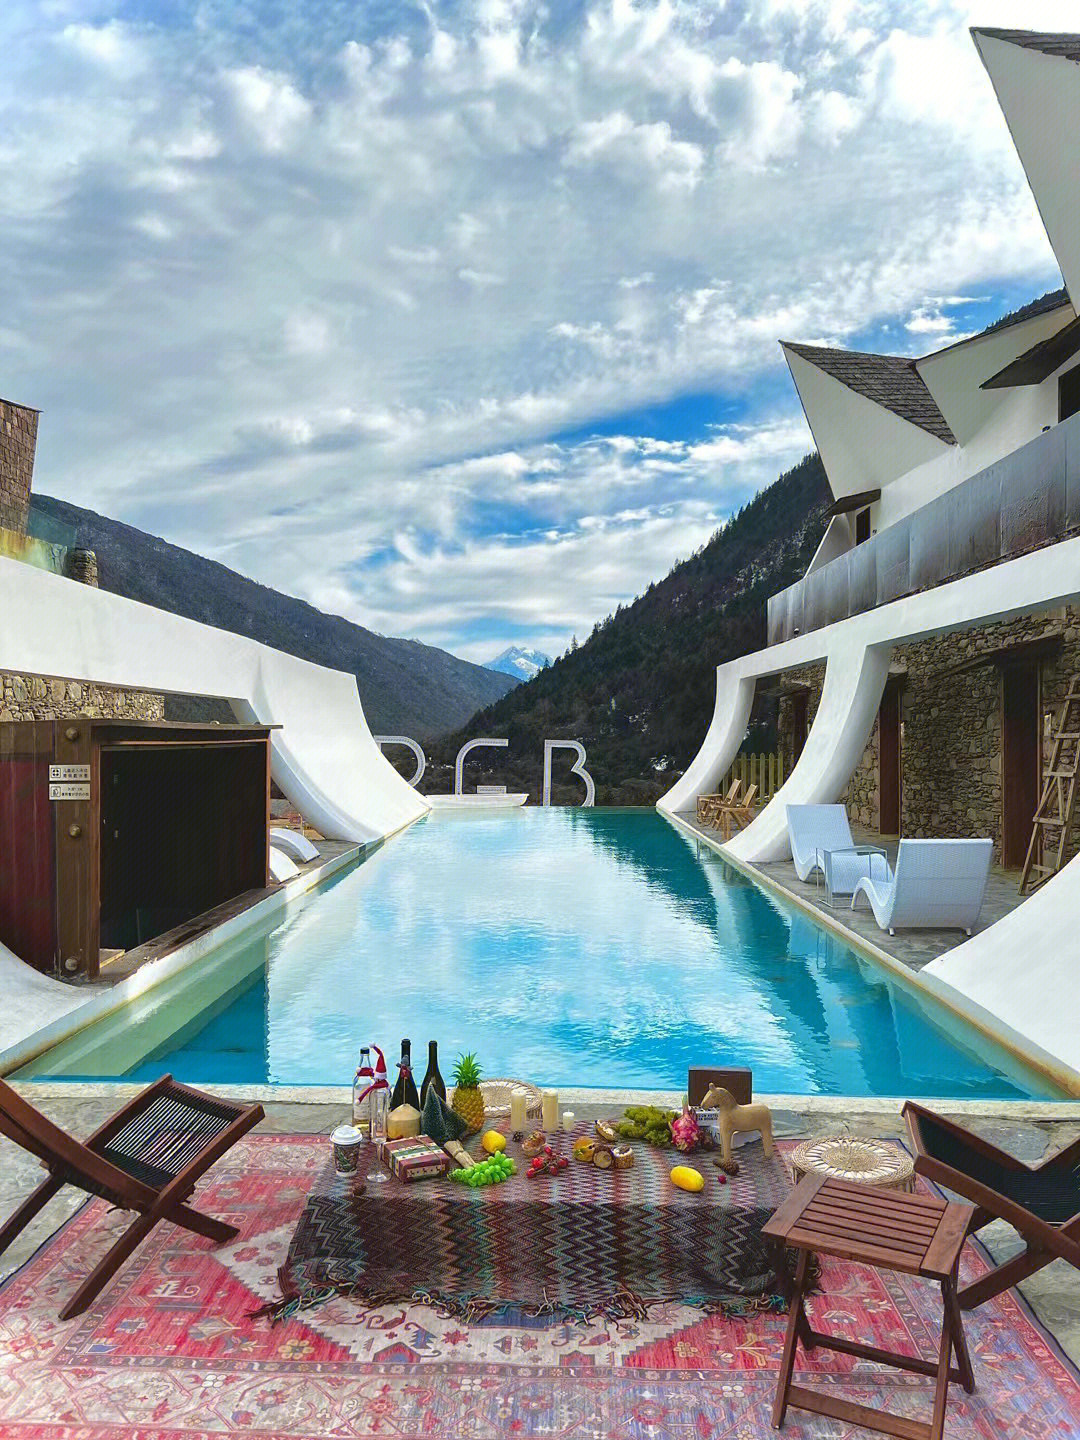 2900海拔的民宿90:「康定市」rgb雅拉野奢温泉酒店整体打造野外奢华